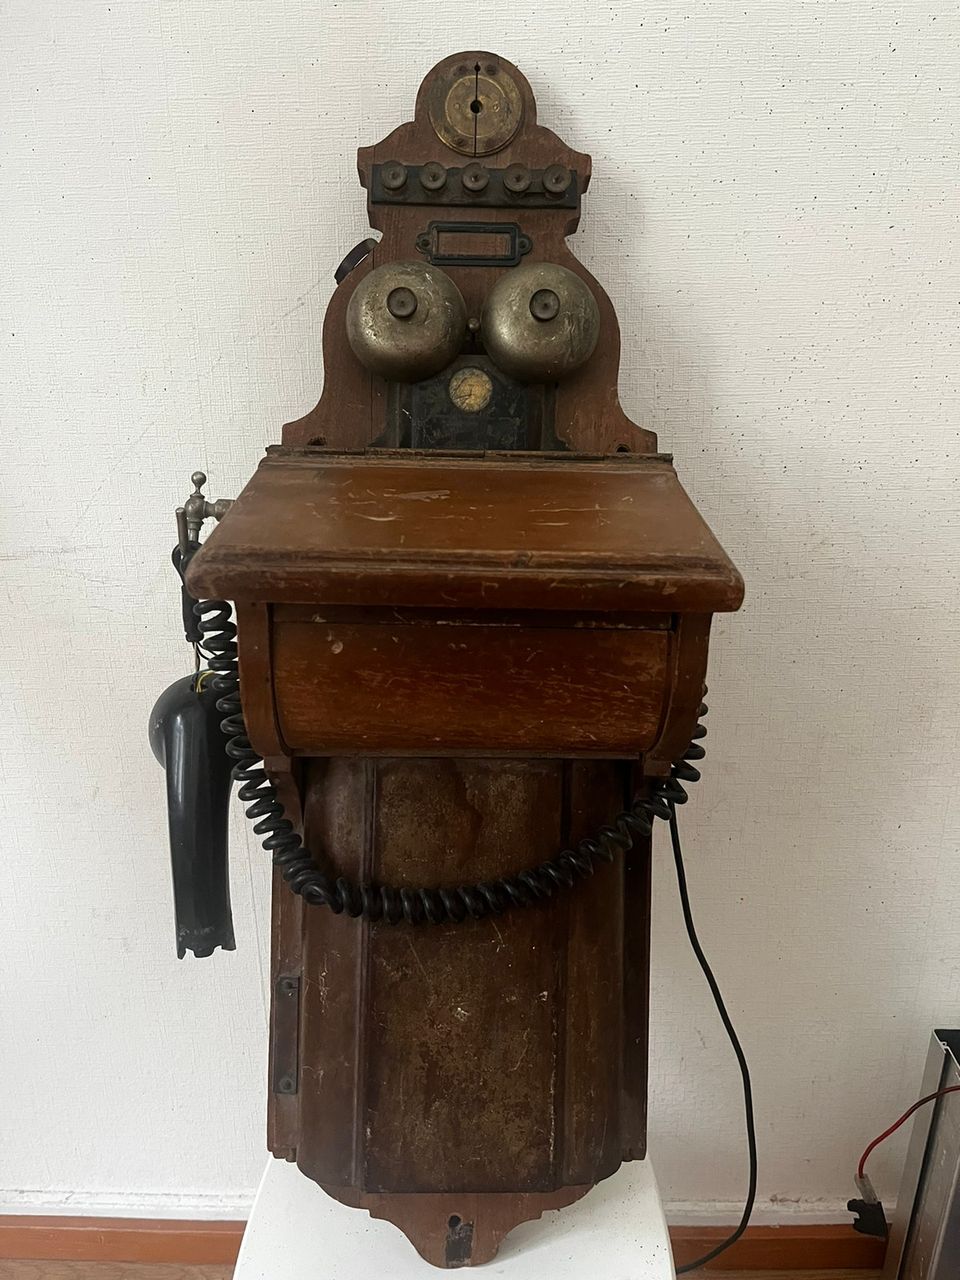 L.M Ericssonin alkuperäinen antiikkinen seinäpuhelin